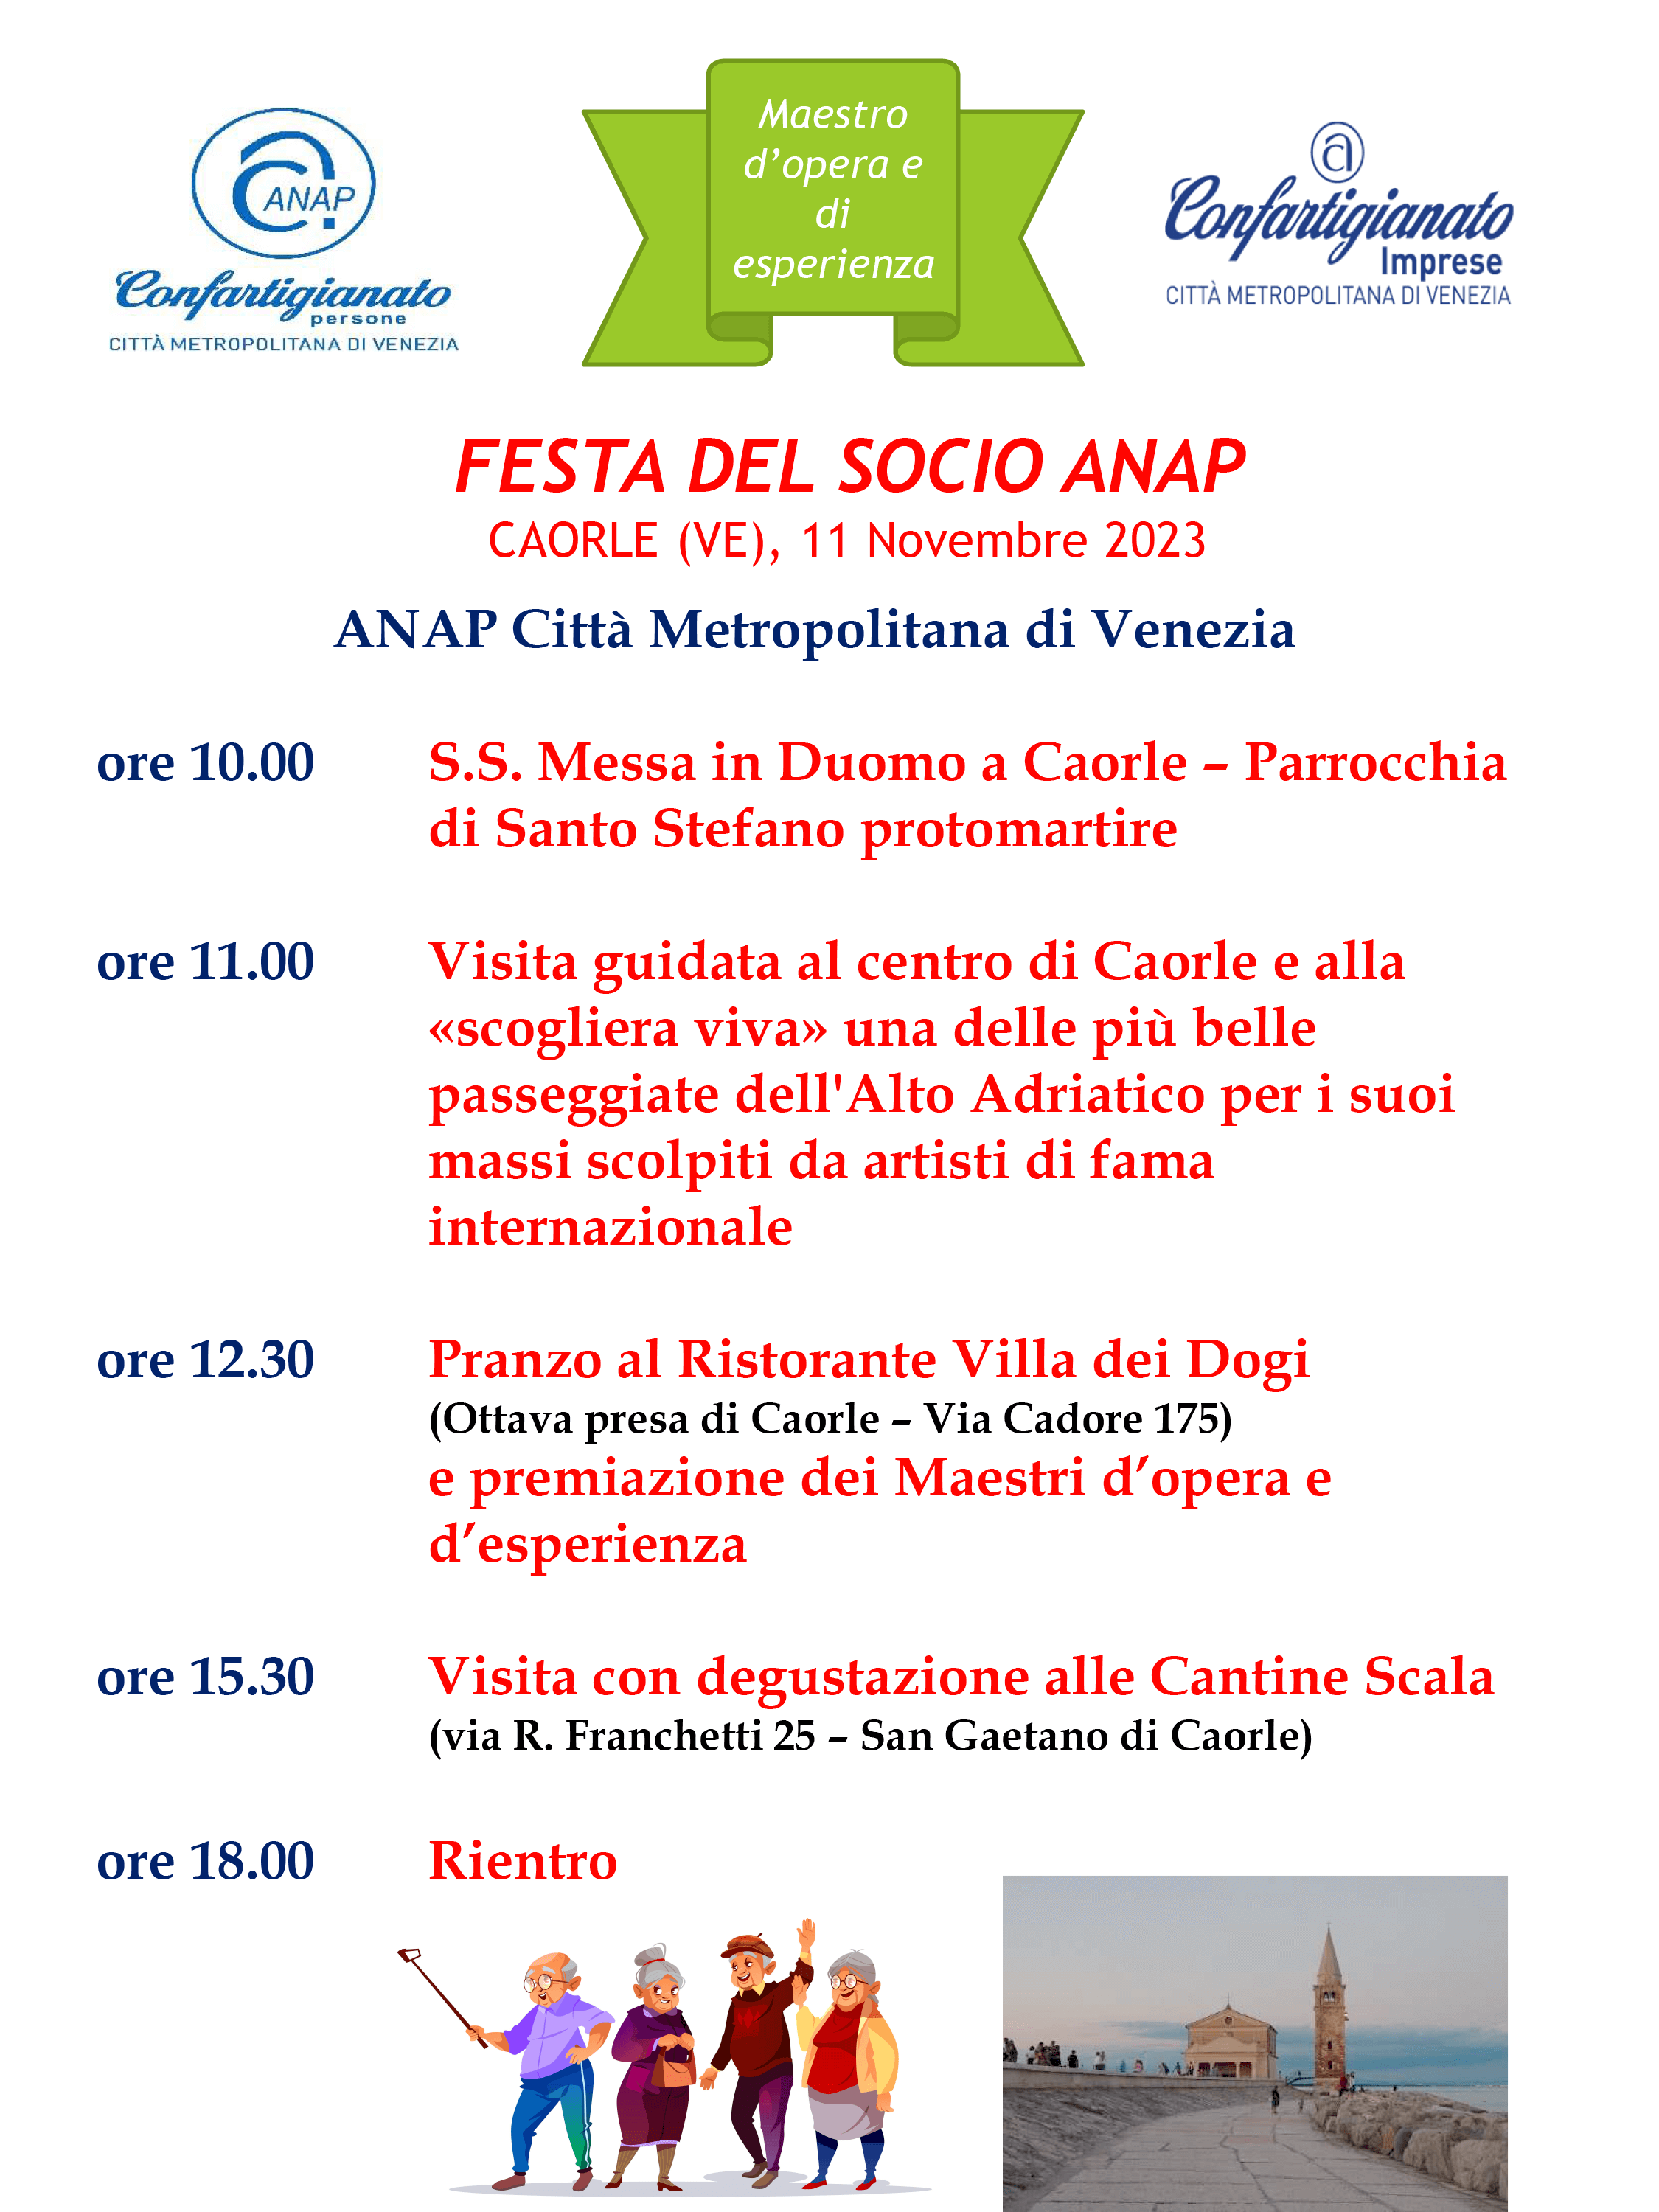 ANAP Città Metropolitana di Venezia (Associazione Nazionale Artigiani Pensionati) organizza la FESTA DEL SOCIO sabato 11 Novembre 2023 a Caorle (Ve)